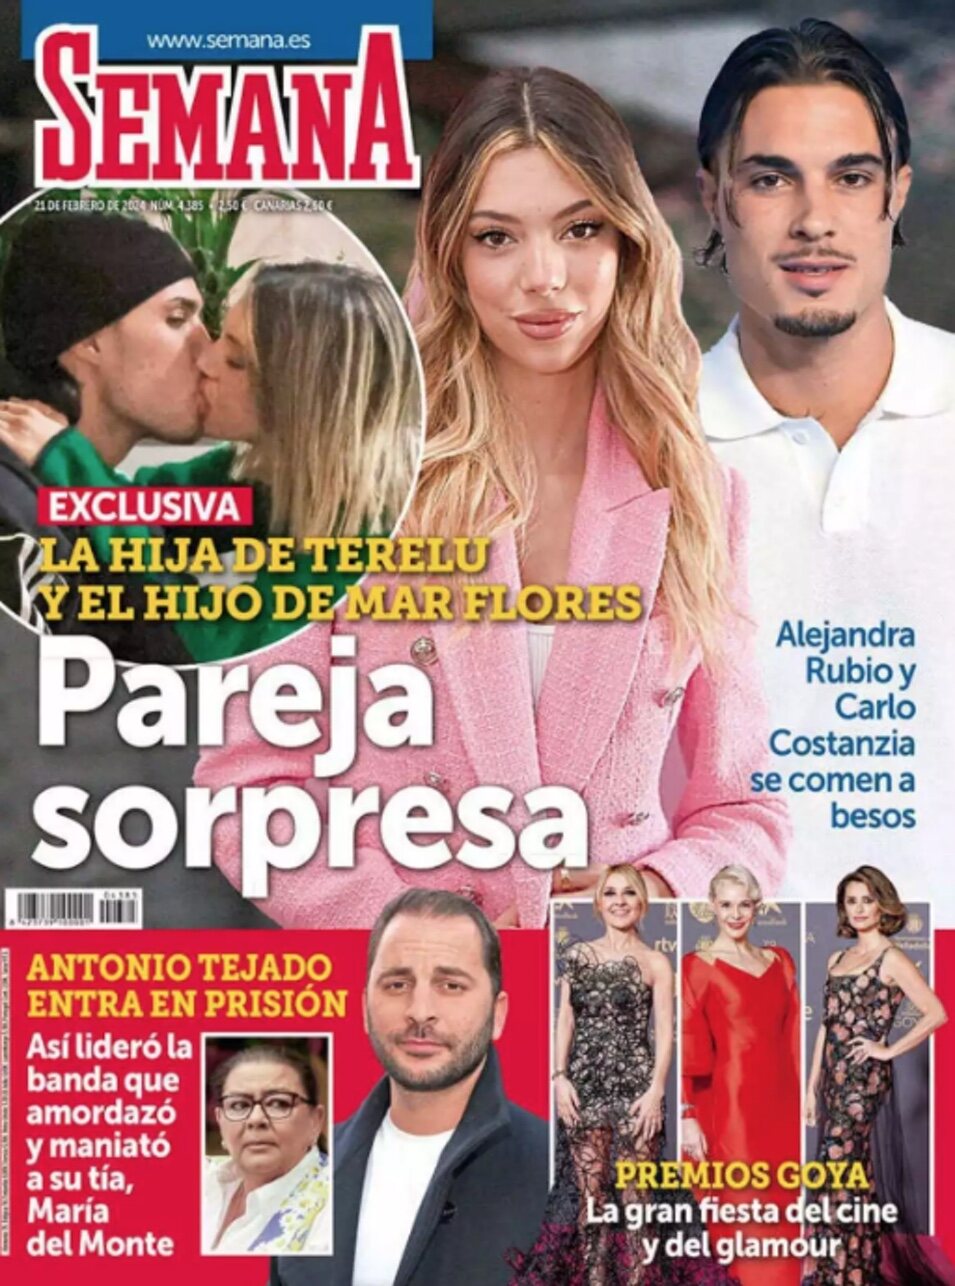  Portada de Semana con Alejandra Rubio y Carlo Costanzia besándose | Semana